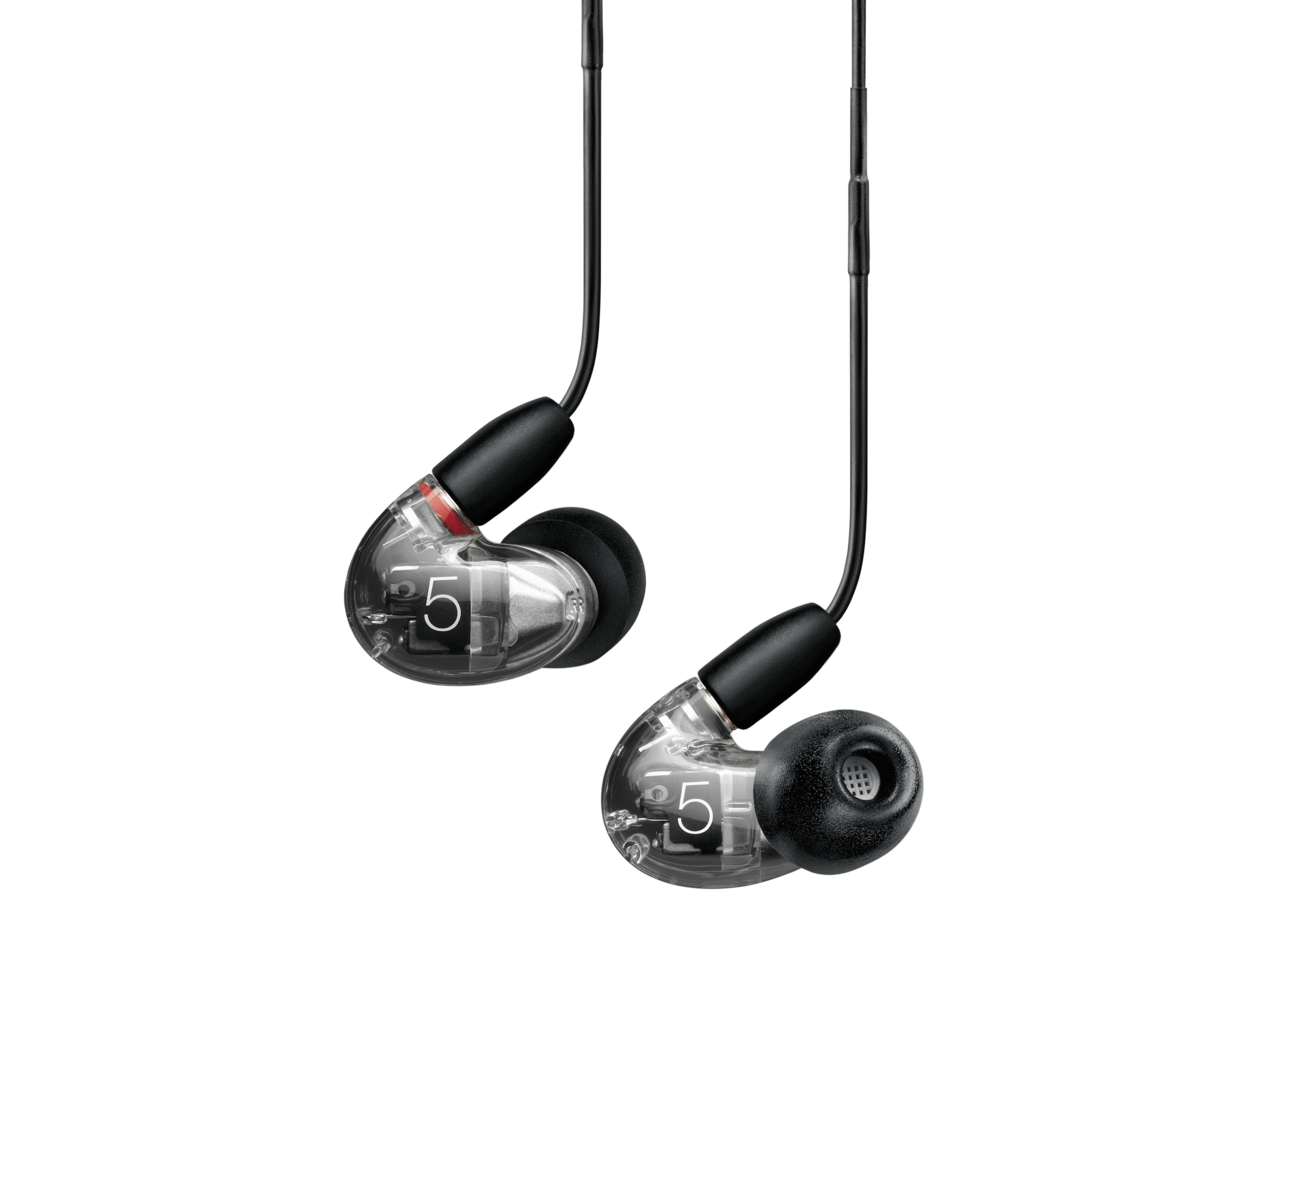 Shure Aonic 5 - Professionele In-ear Monitor oordopjes met afstandsbediening en microfoon